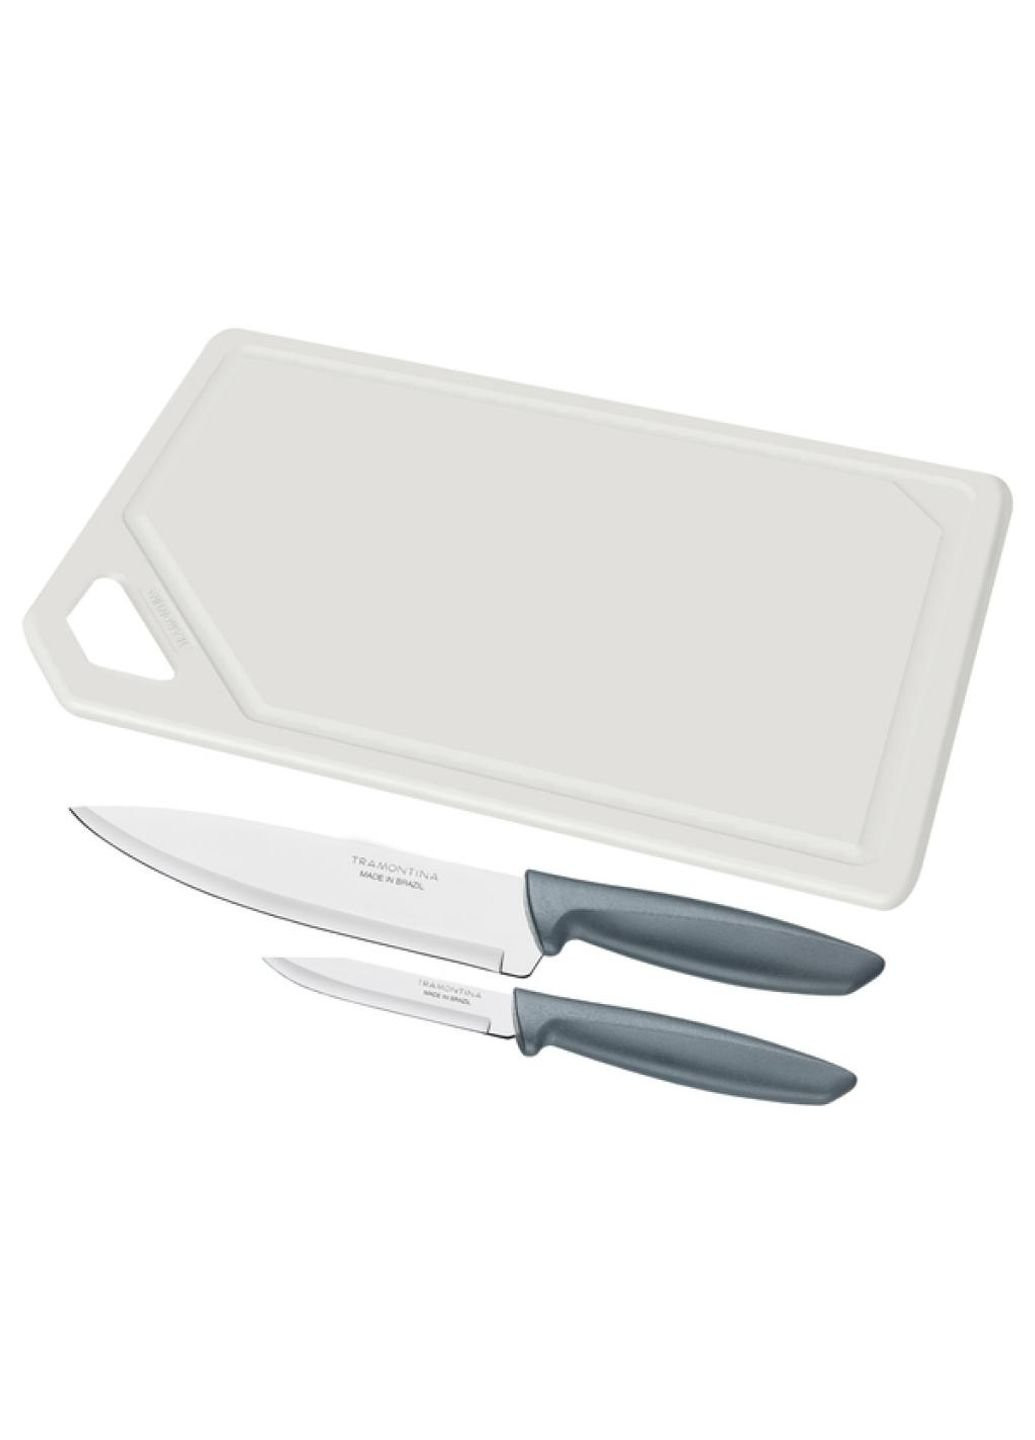 Набір ножів Plenus 3 предмети (з дощечкою) Grey (23498/614) Tramontina сірий,